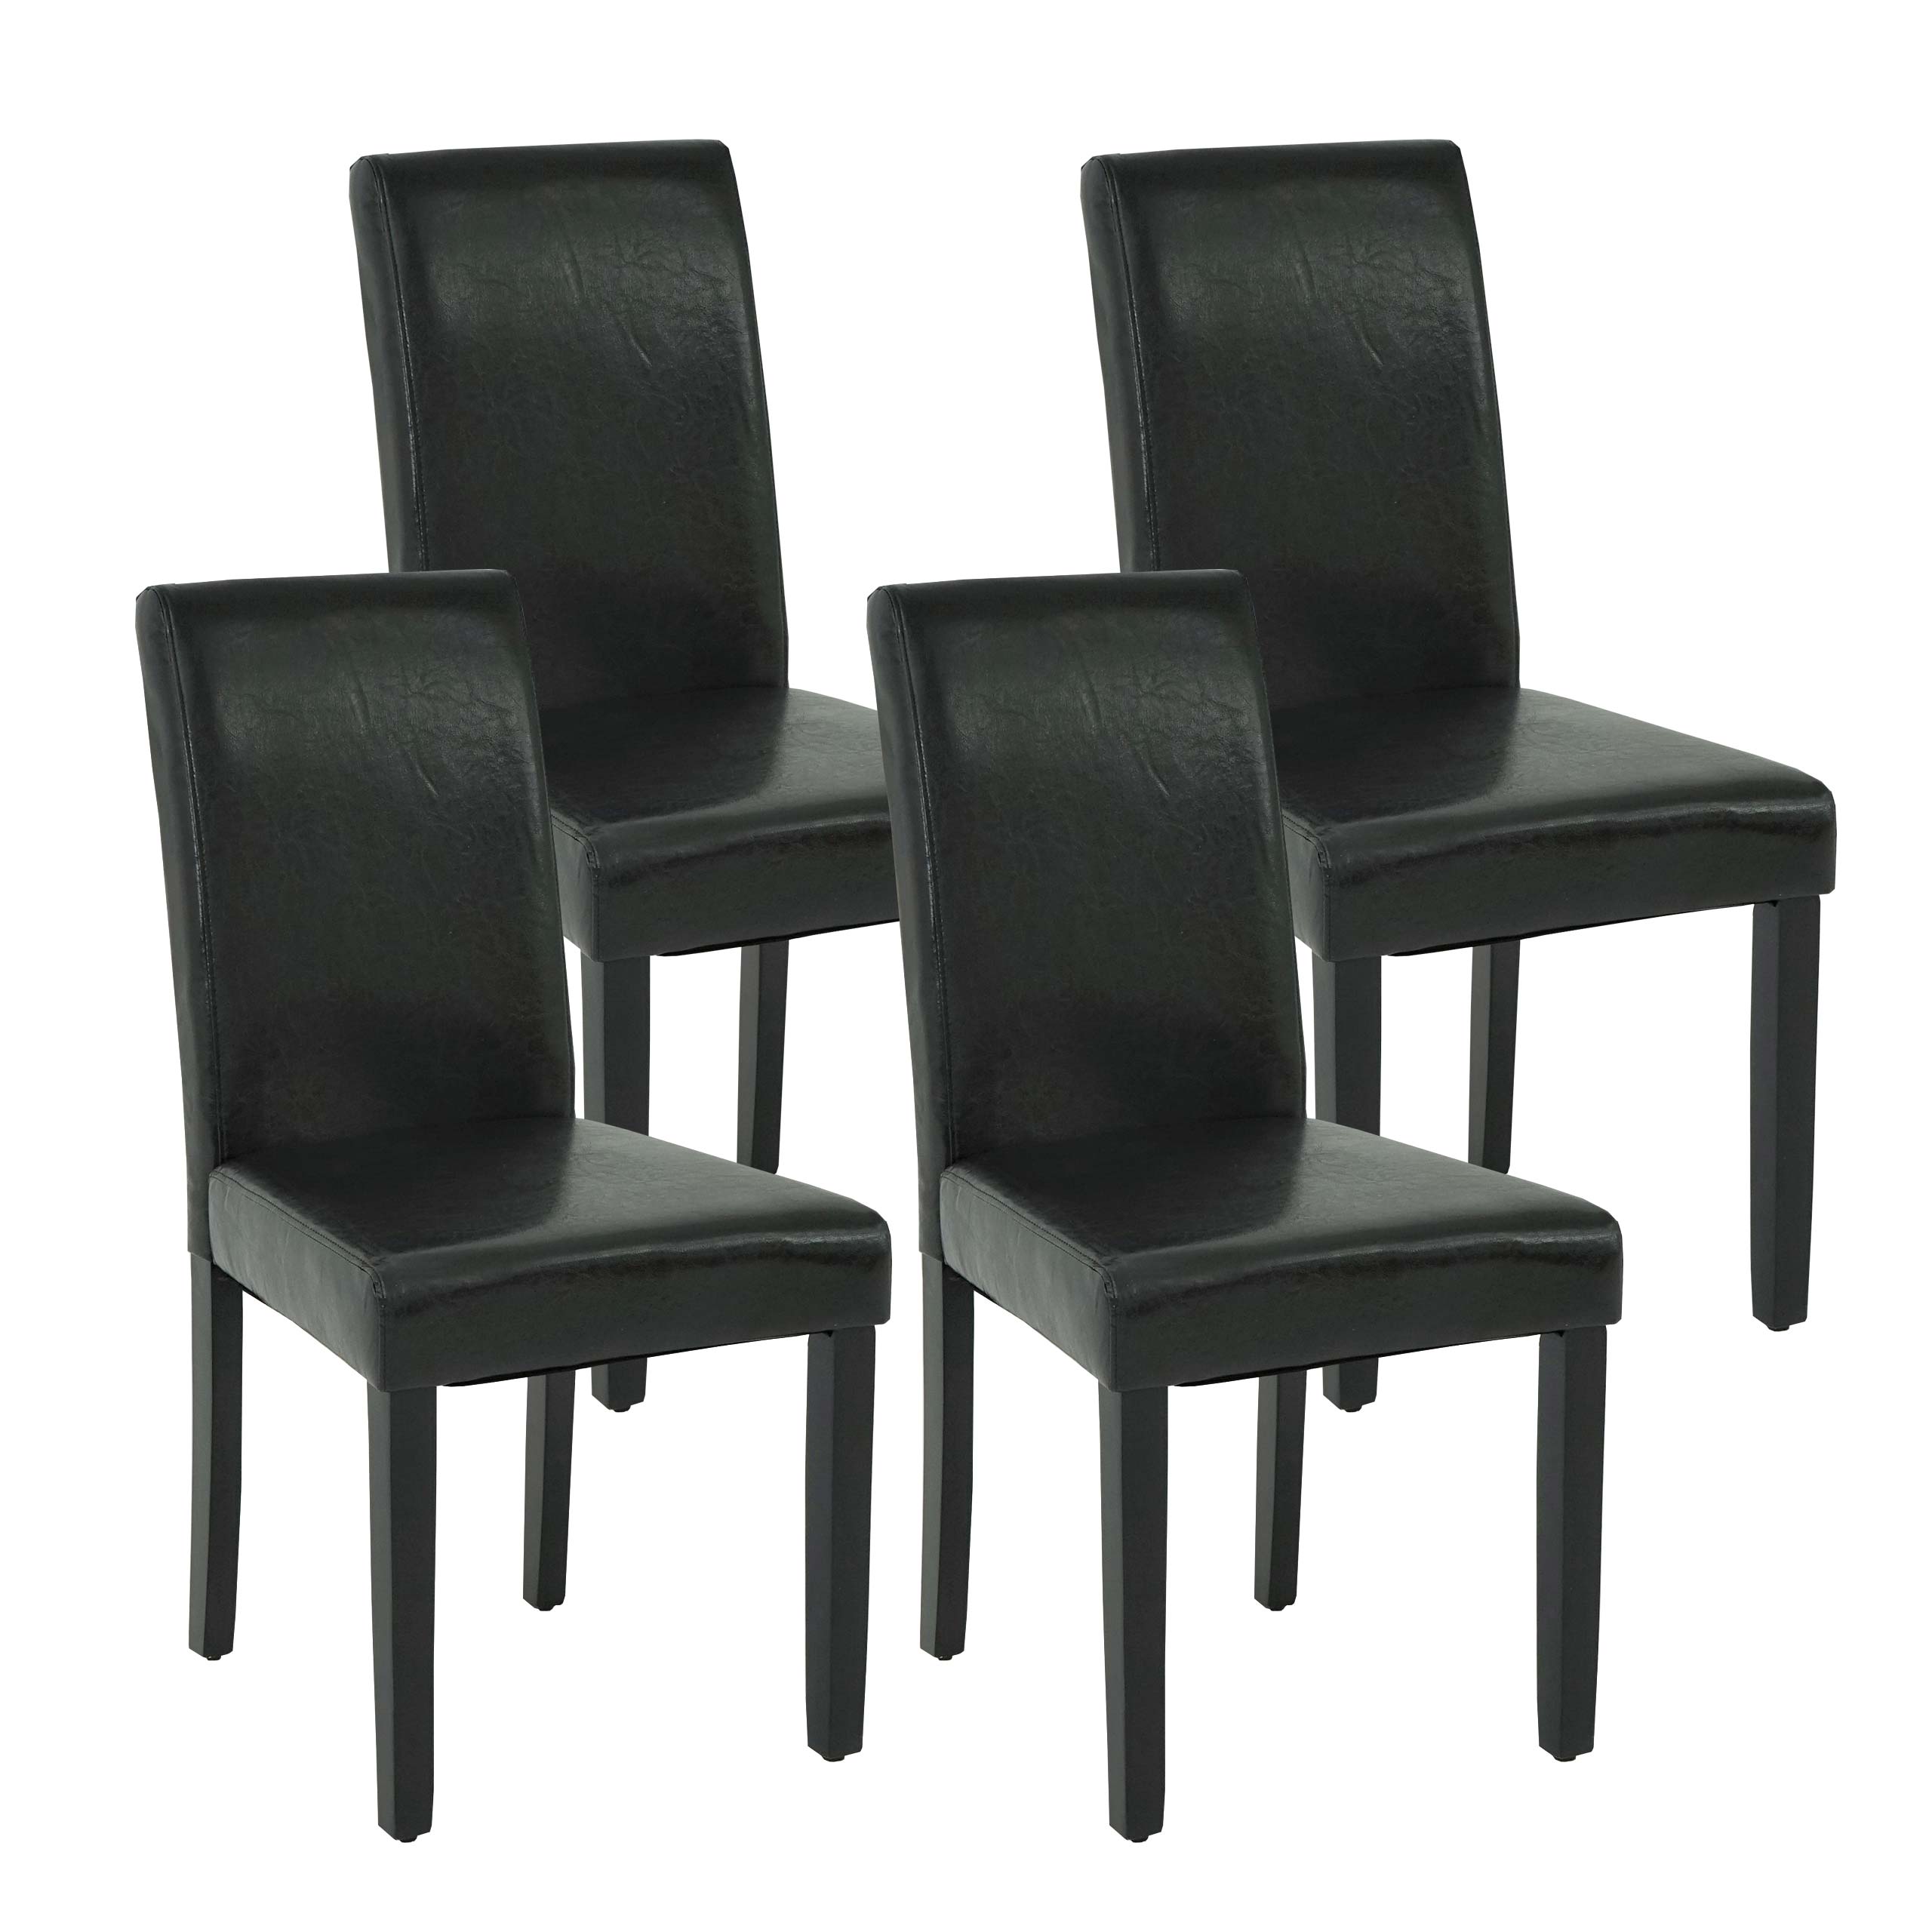 4er-Set Esszimmerstuhl HWC-J99, Küchenstuhl Stuhl, Polsterstuhl, Holz  Kunstleder | eBay